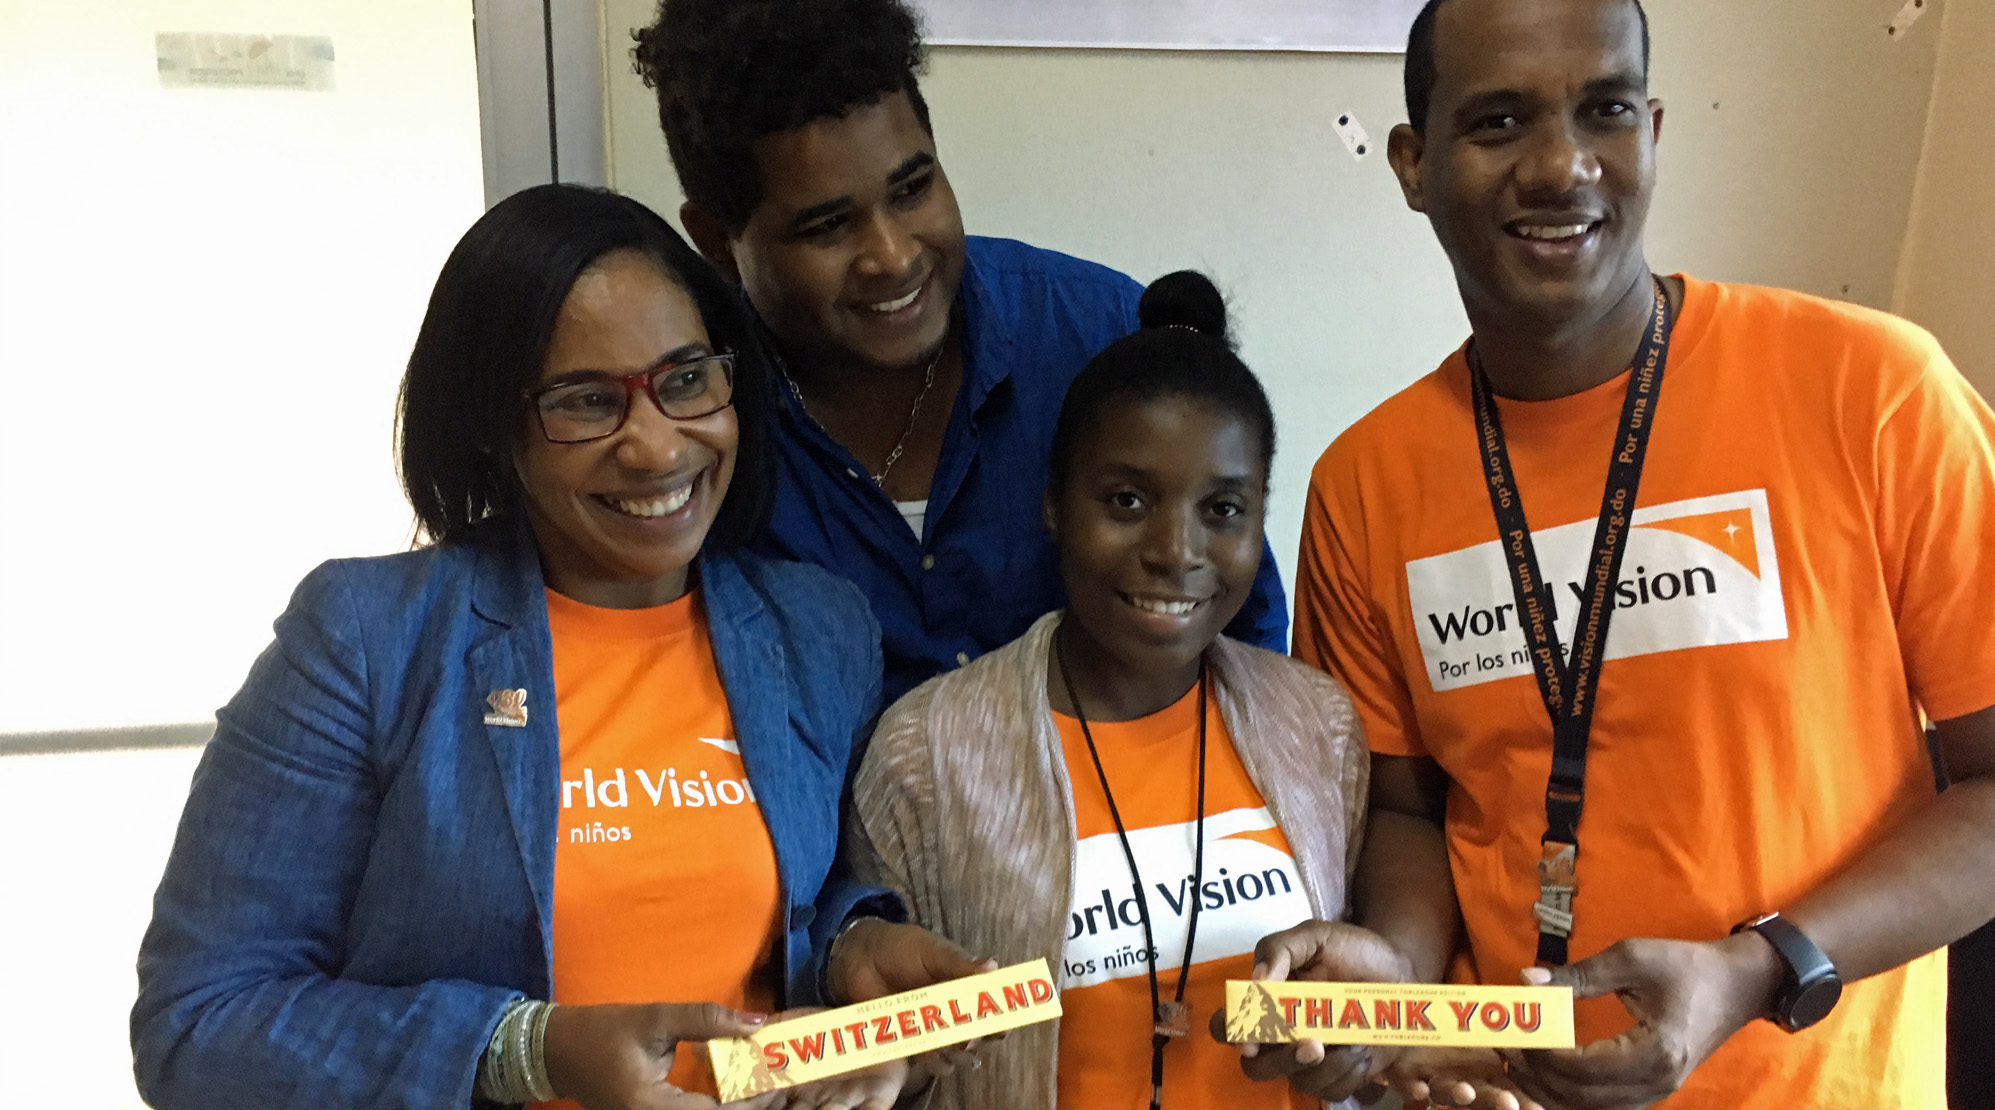 Dominikanische Republik: 4 lachende junge Menschen mit World-Vision-T-Shirts und Toblerone-Schokolade